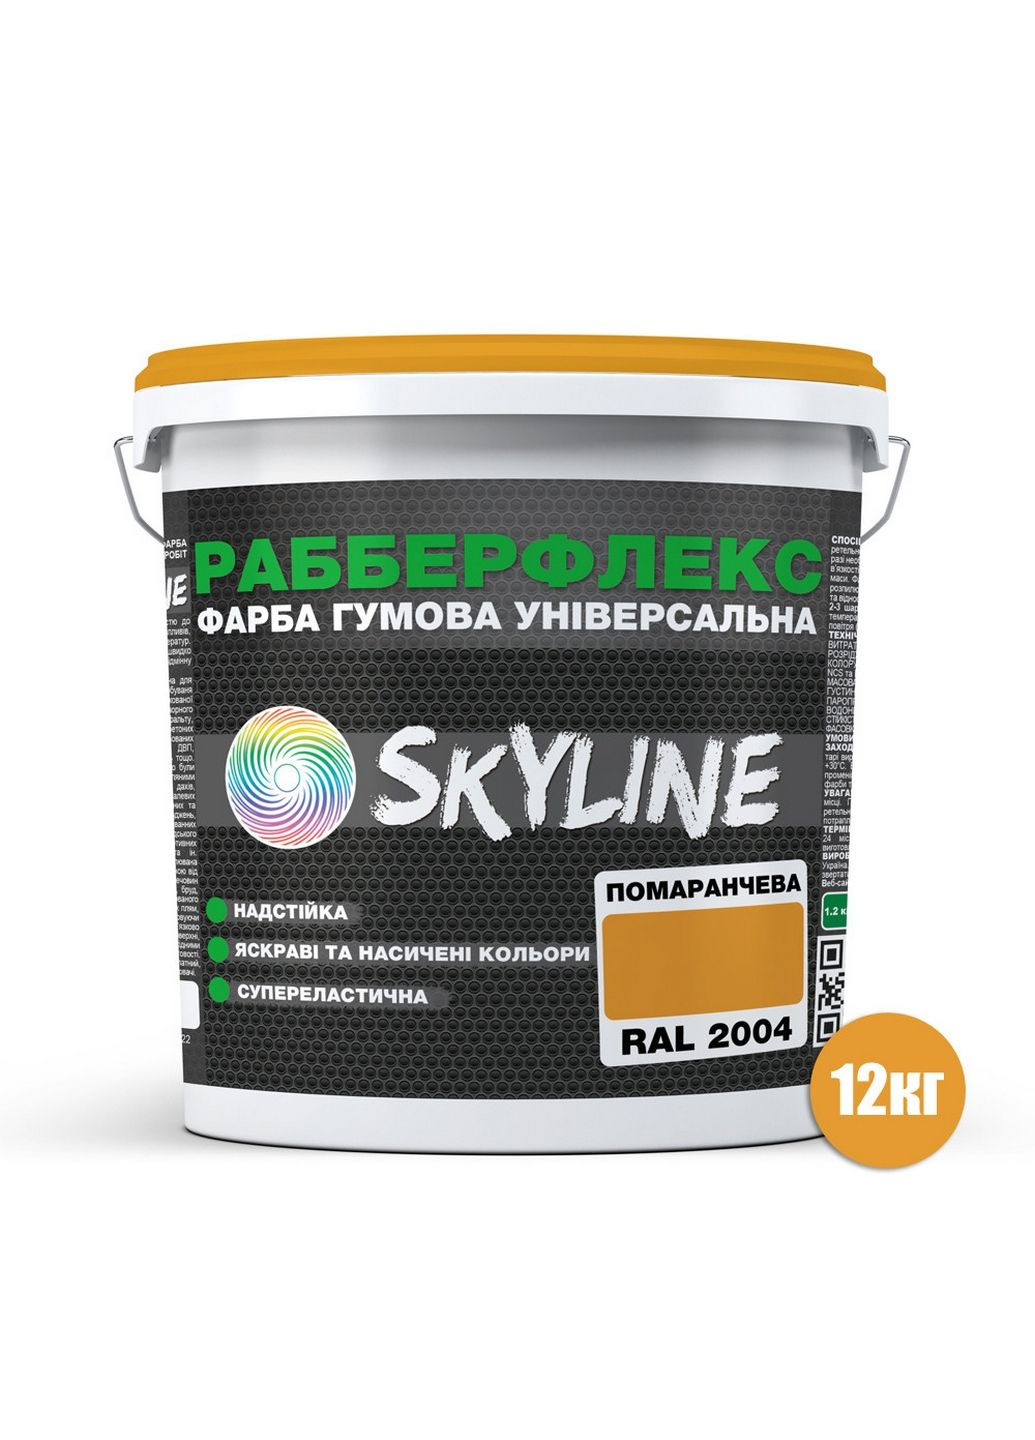 Краска резиновая суперэластичная сверхстойкая «РабберФлекс» 12 кг SkyLine (289459185)